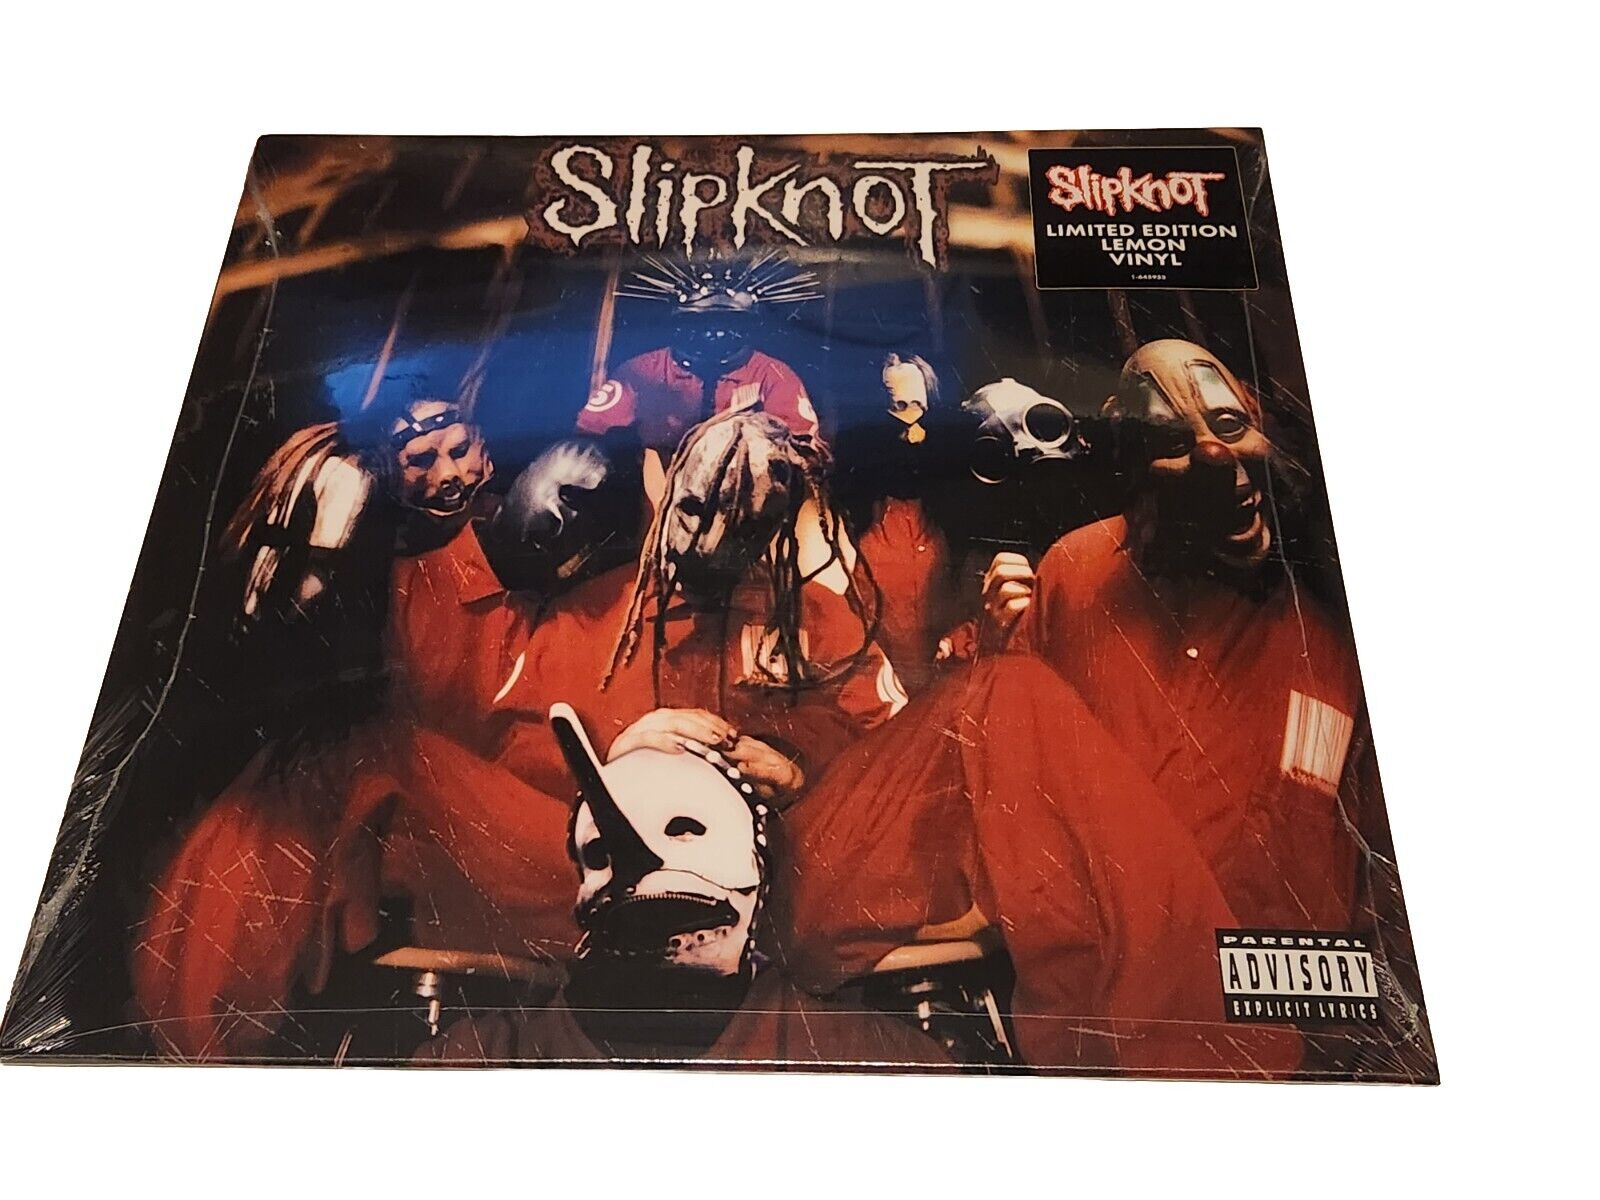 Slipknot by Slipknot Record, 2022 LP Limited Lemon Vinyl NEW Sealed 